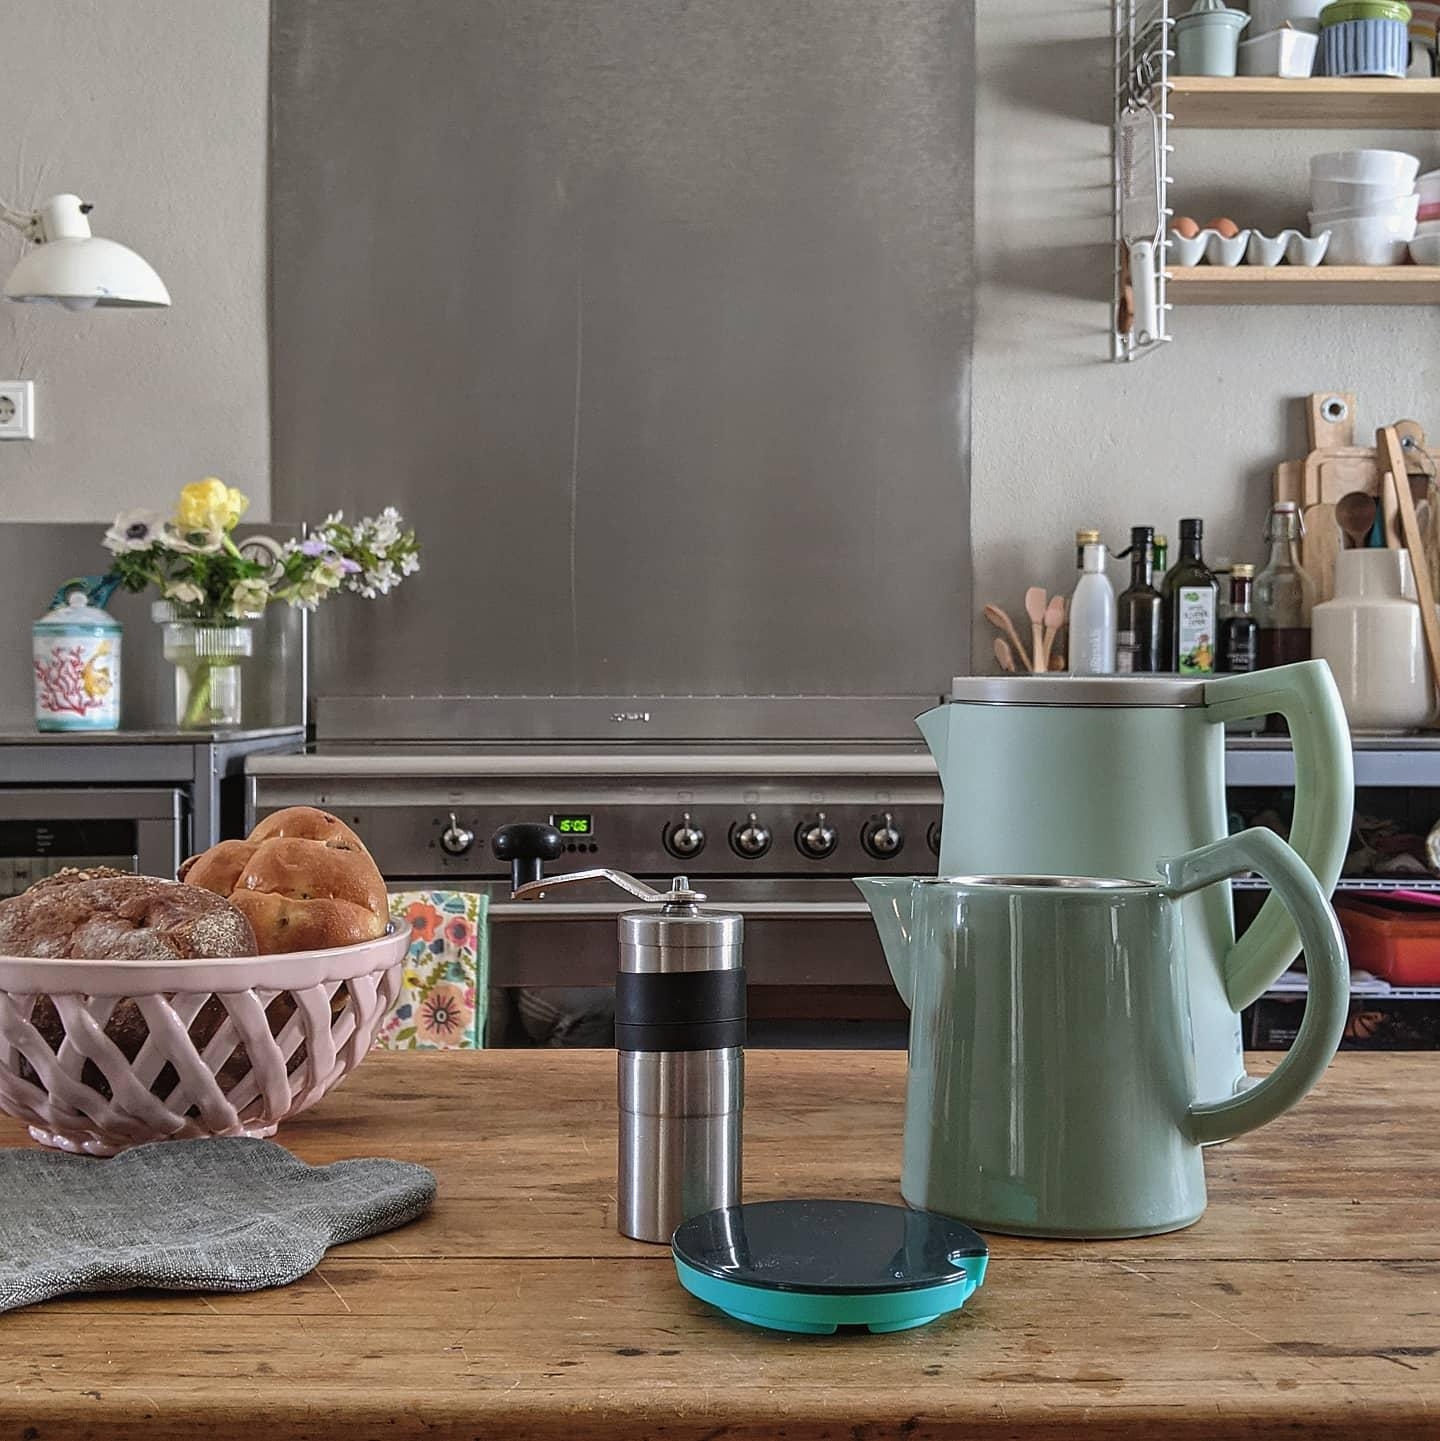 #küche#wohnen#kitchen#living#keramik#kaffee#altbauliebe#couchstyle#ibspiration#home#homestory